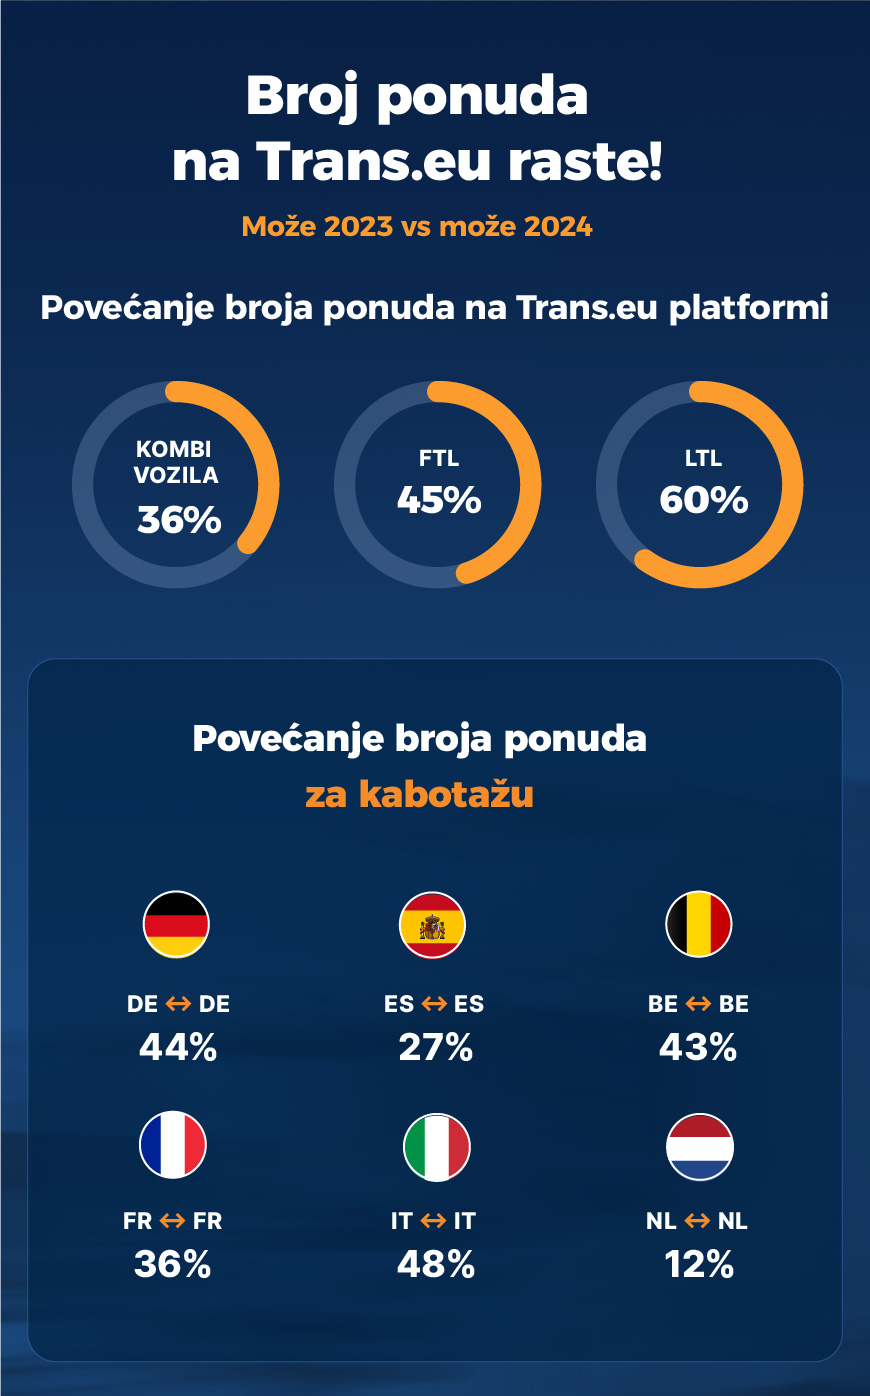 Broj ponuda na Trans.eu raste!
Povećanje broja ponuda na Trans.eu platformi
Povećanje broja ponuda za kabotažu